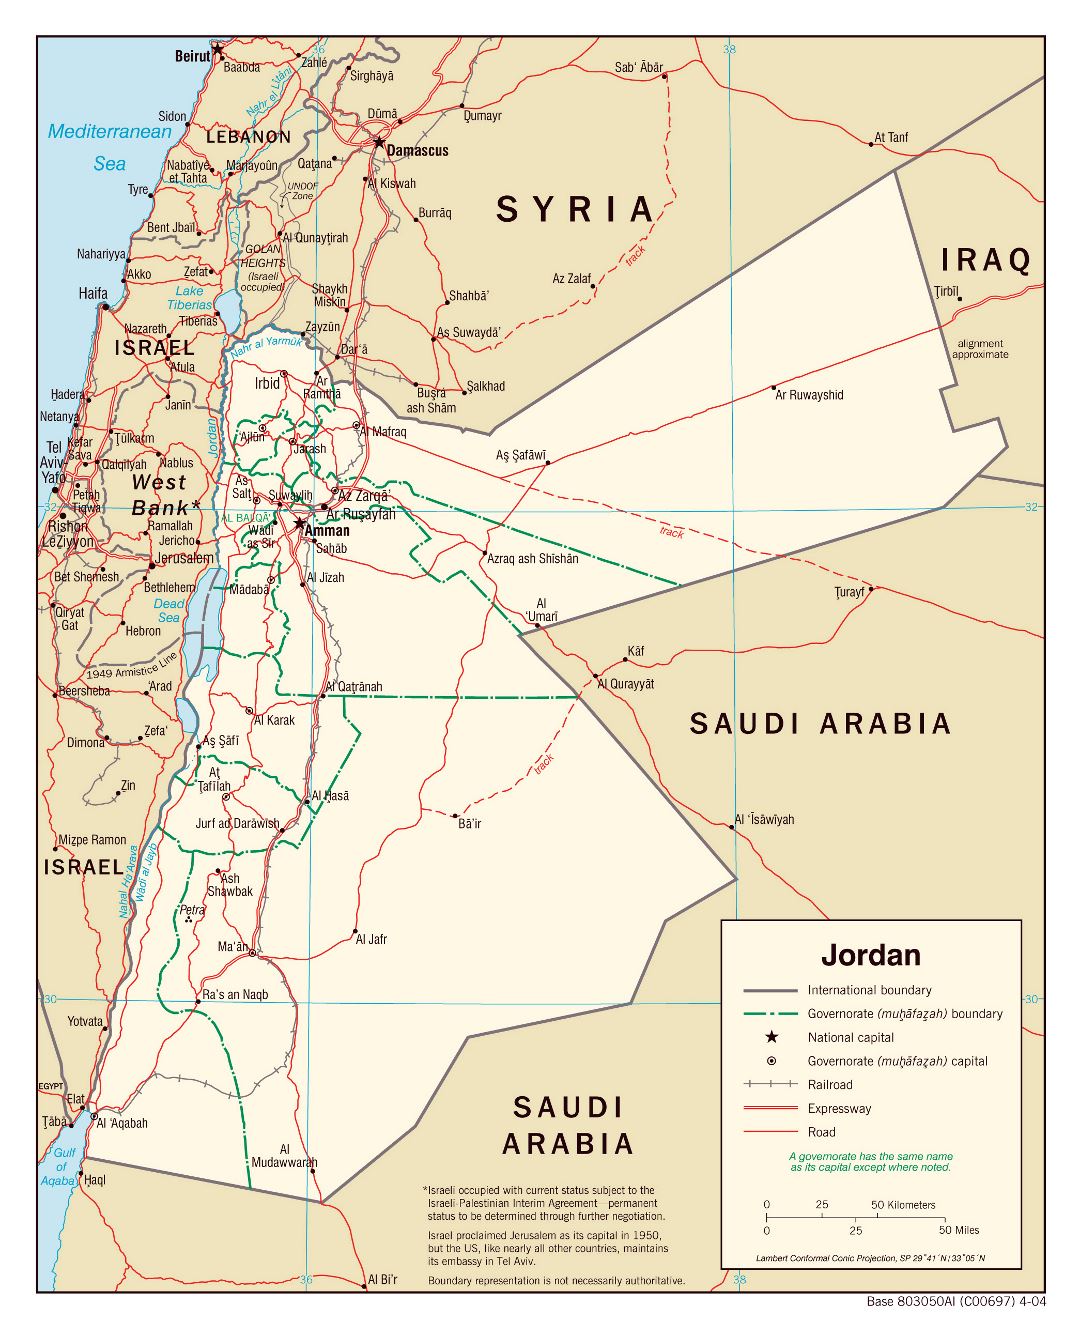 Grande mapa político y administrativo de Jordania con carreteras, ferrocarriles y principales ciudades - 2004